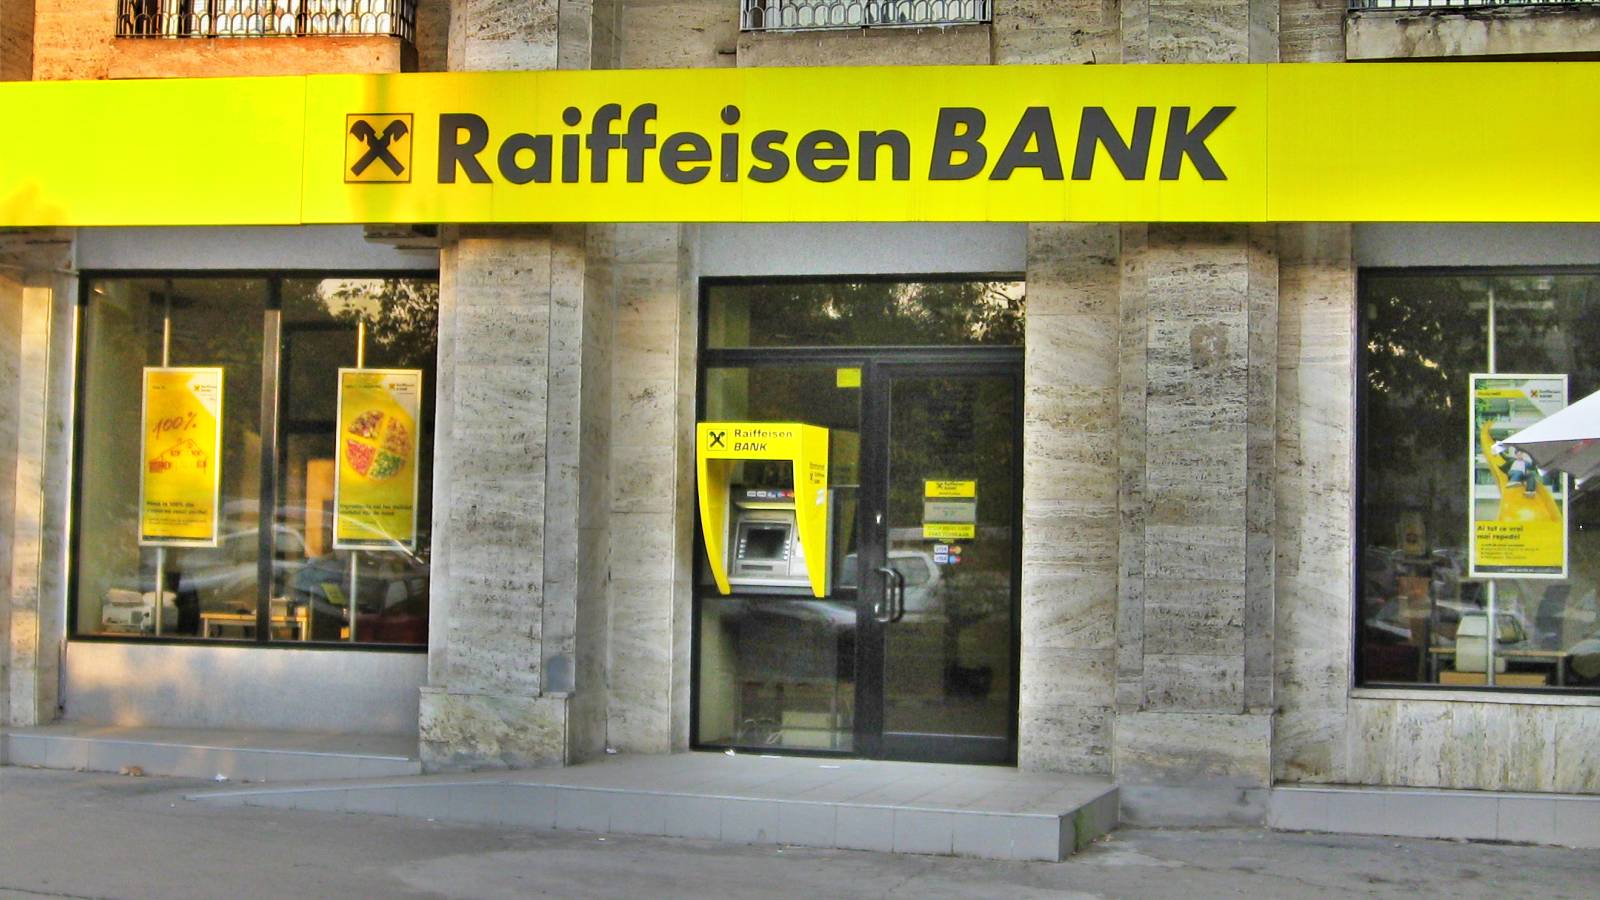 Raiffeisen Bank mutual